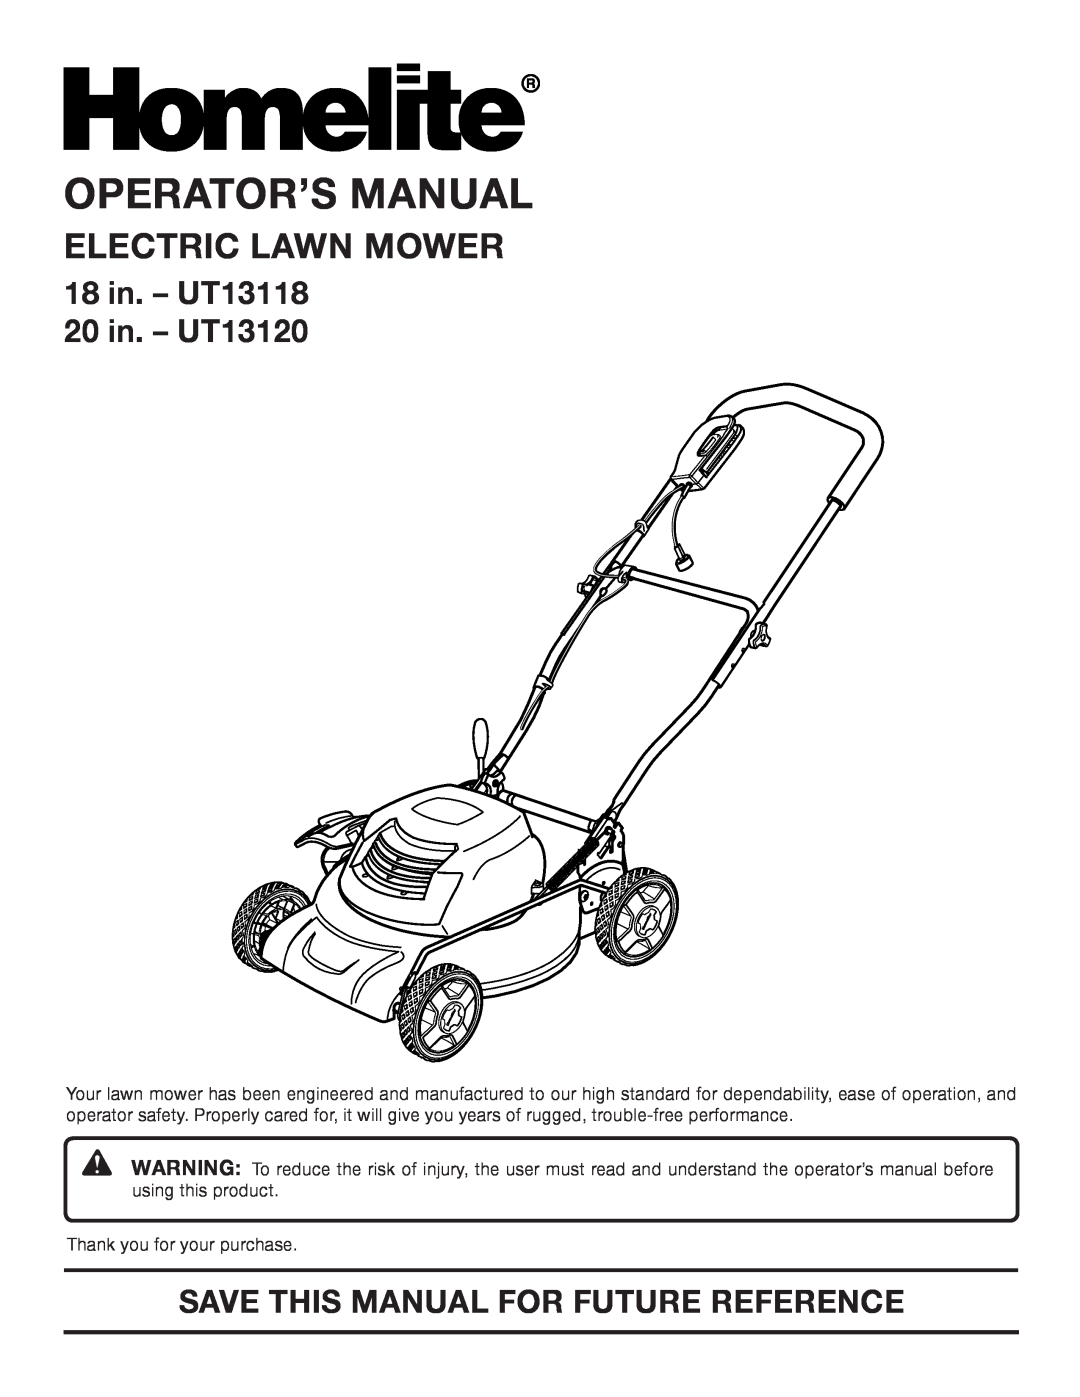 Homelite manual Operator’S Manual, Electric Lawn Mower, 18 in. - UT13118 20 in. - UT13120 